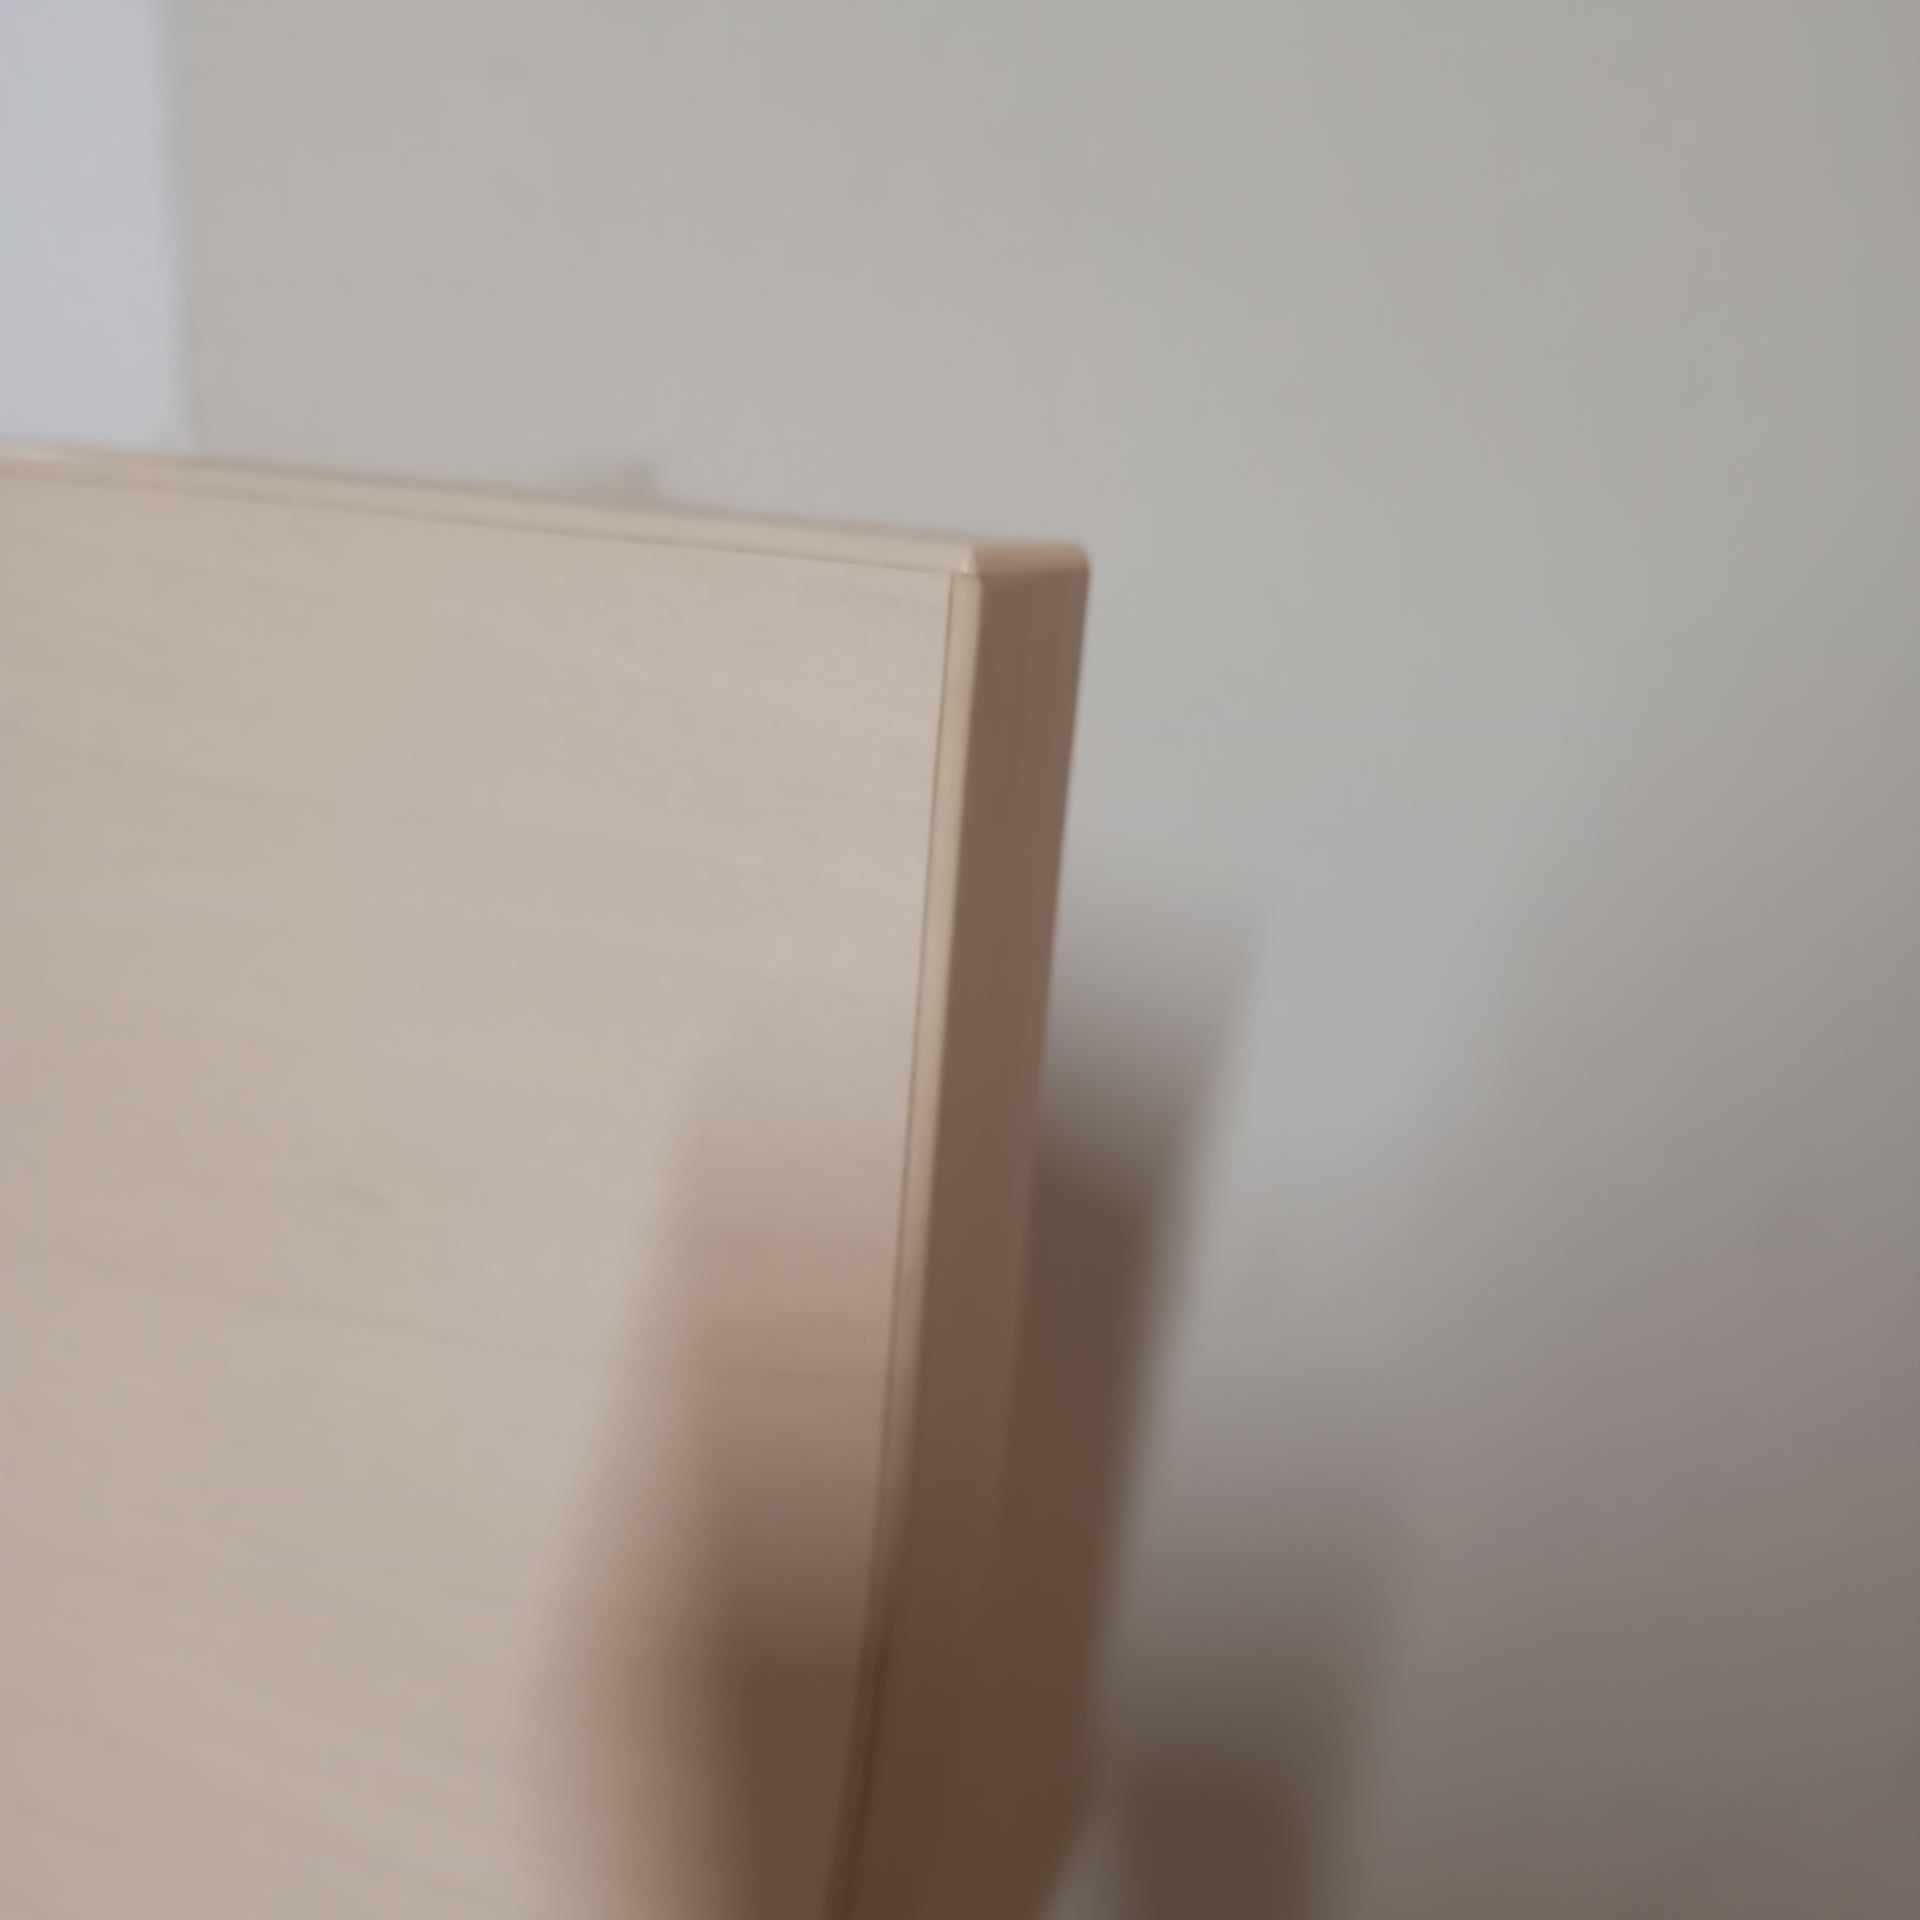 blat biurka biurko narożne płyta meblowa